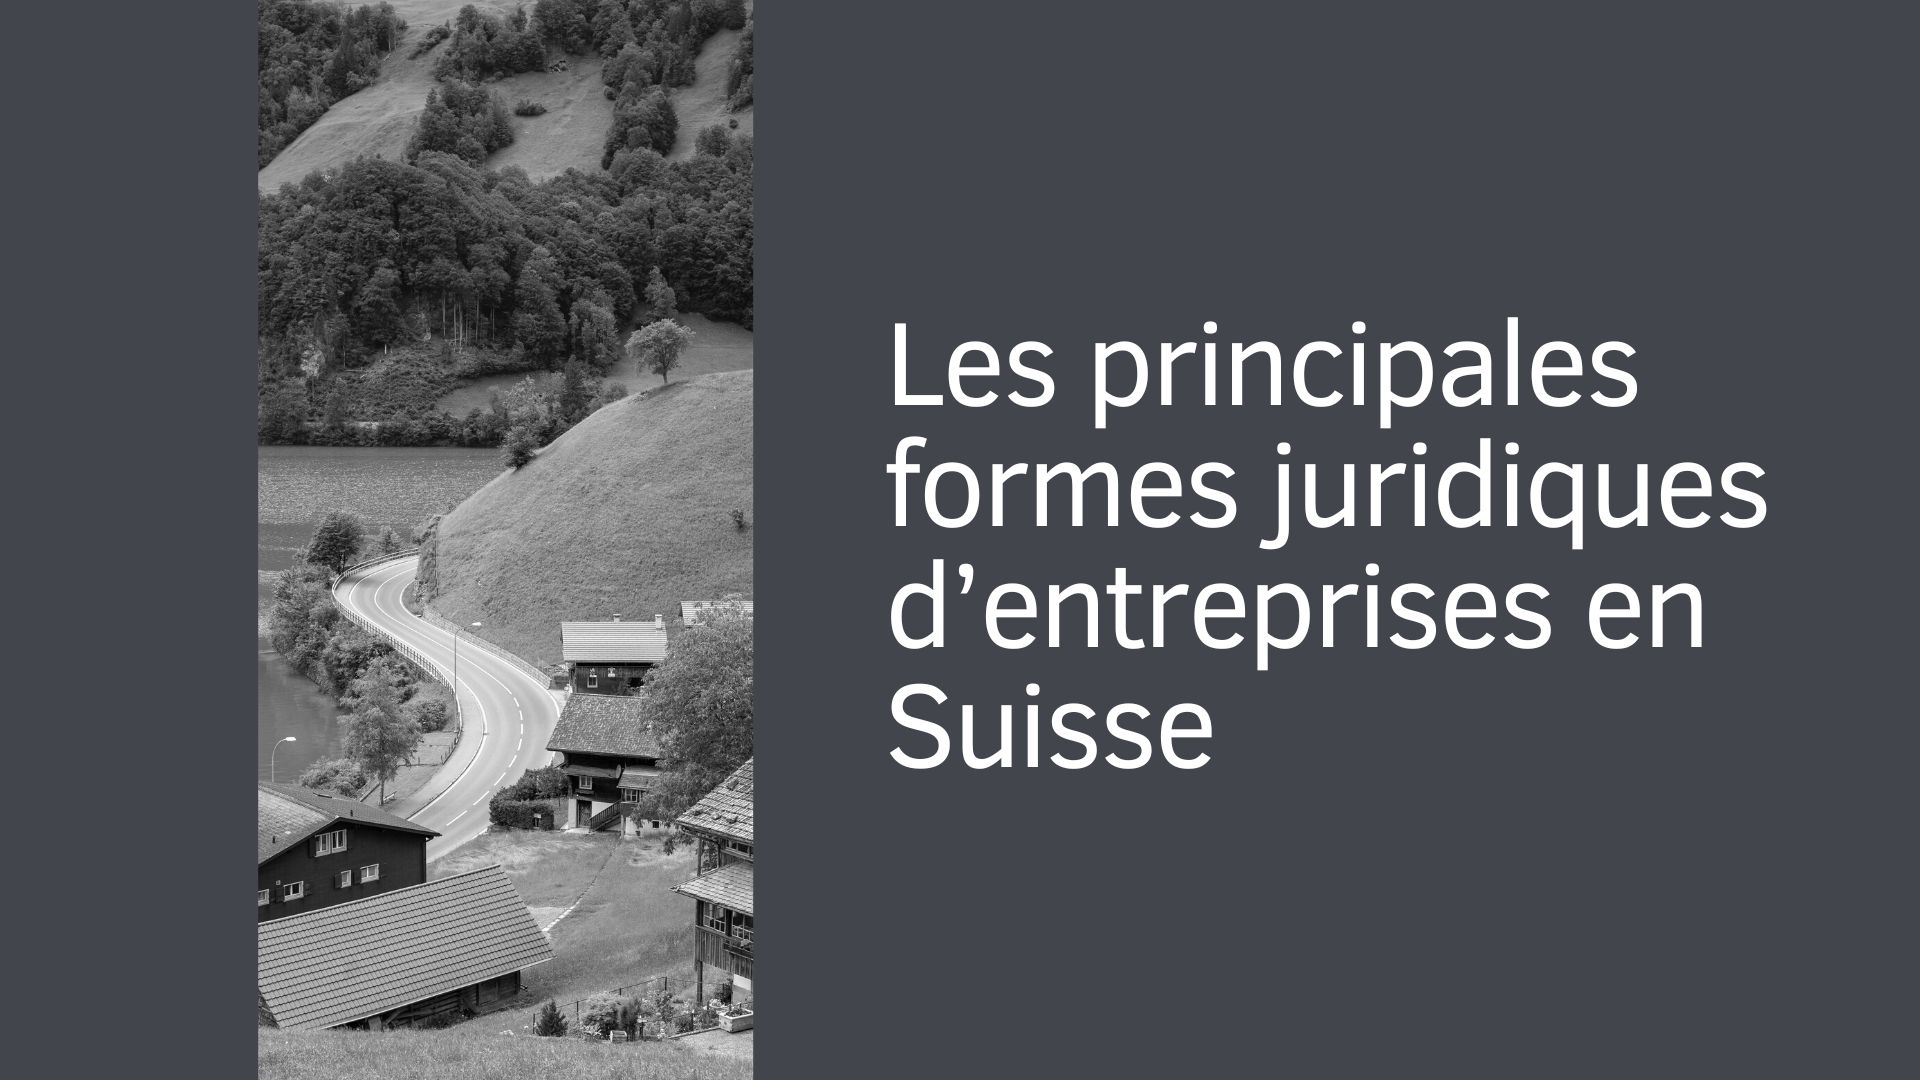 Les principales formes juridiques d’entreprises en Suisse